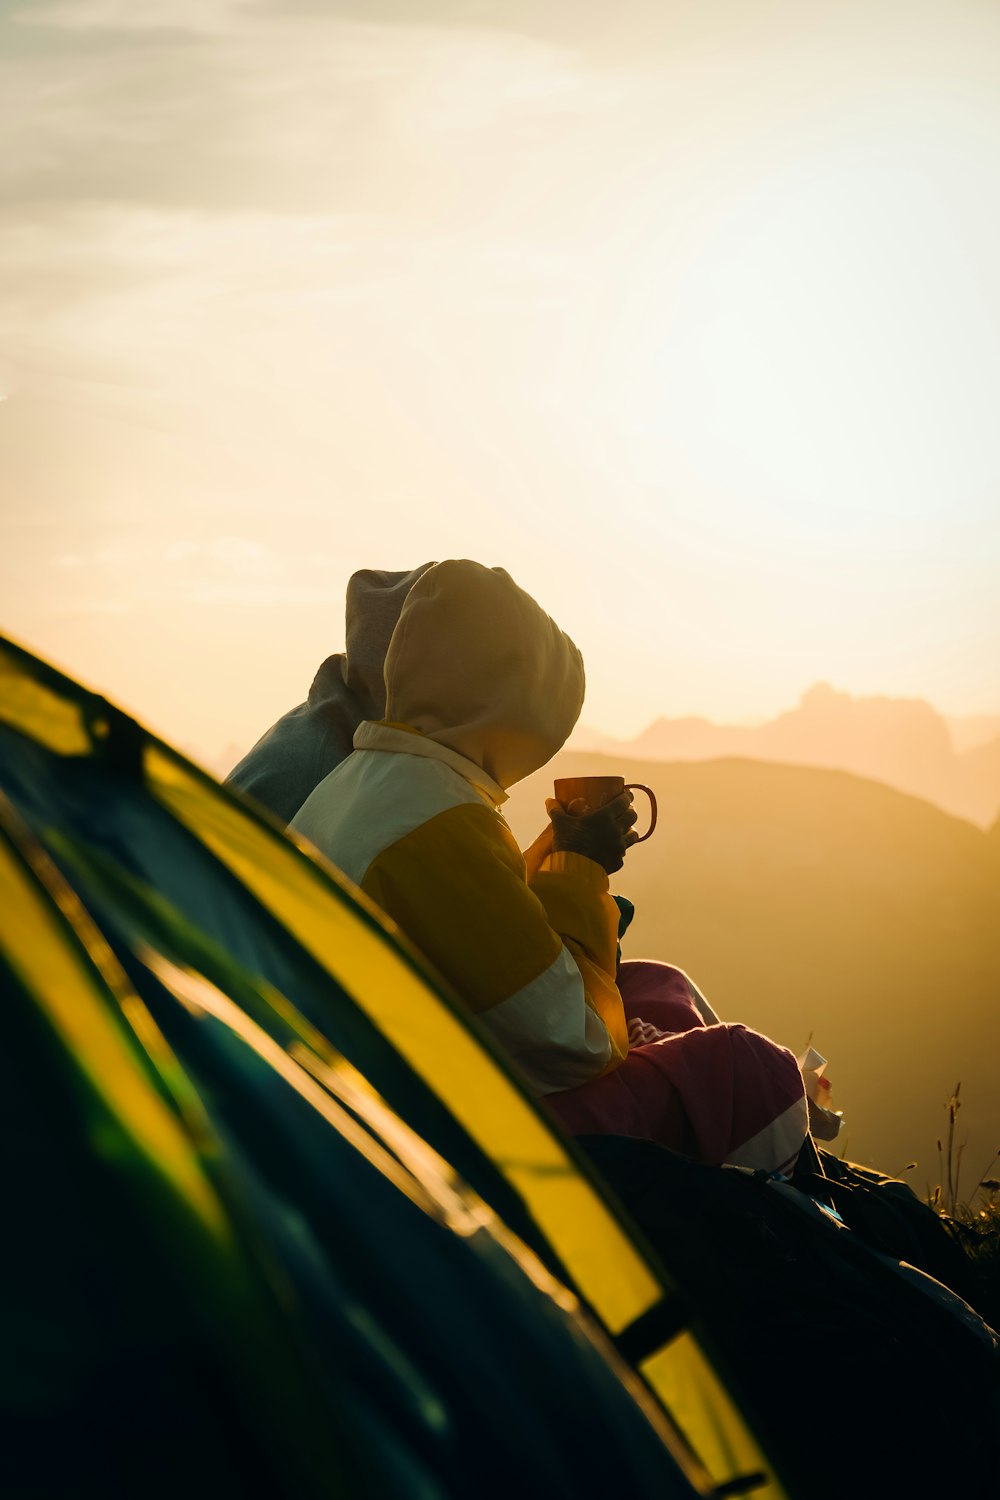 homme et femme assis sur la voiture jaune et noire au coucher du soleil